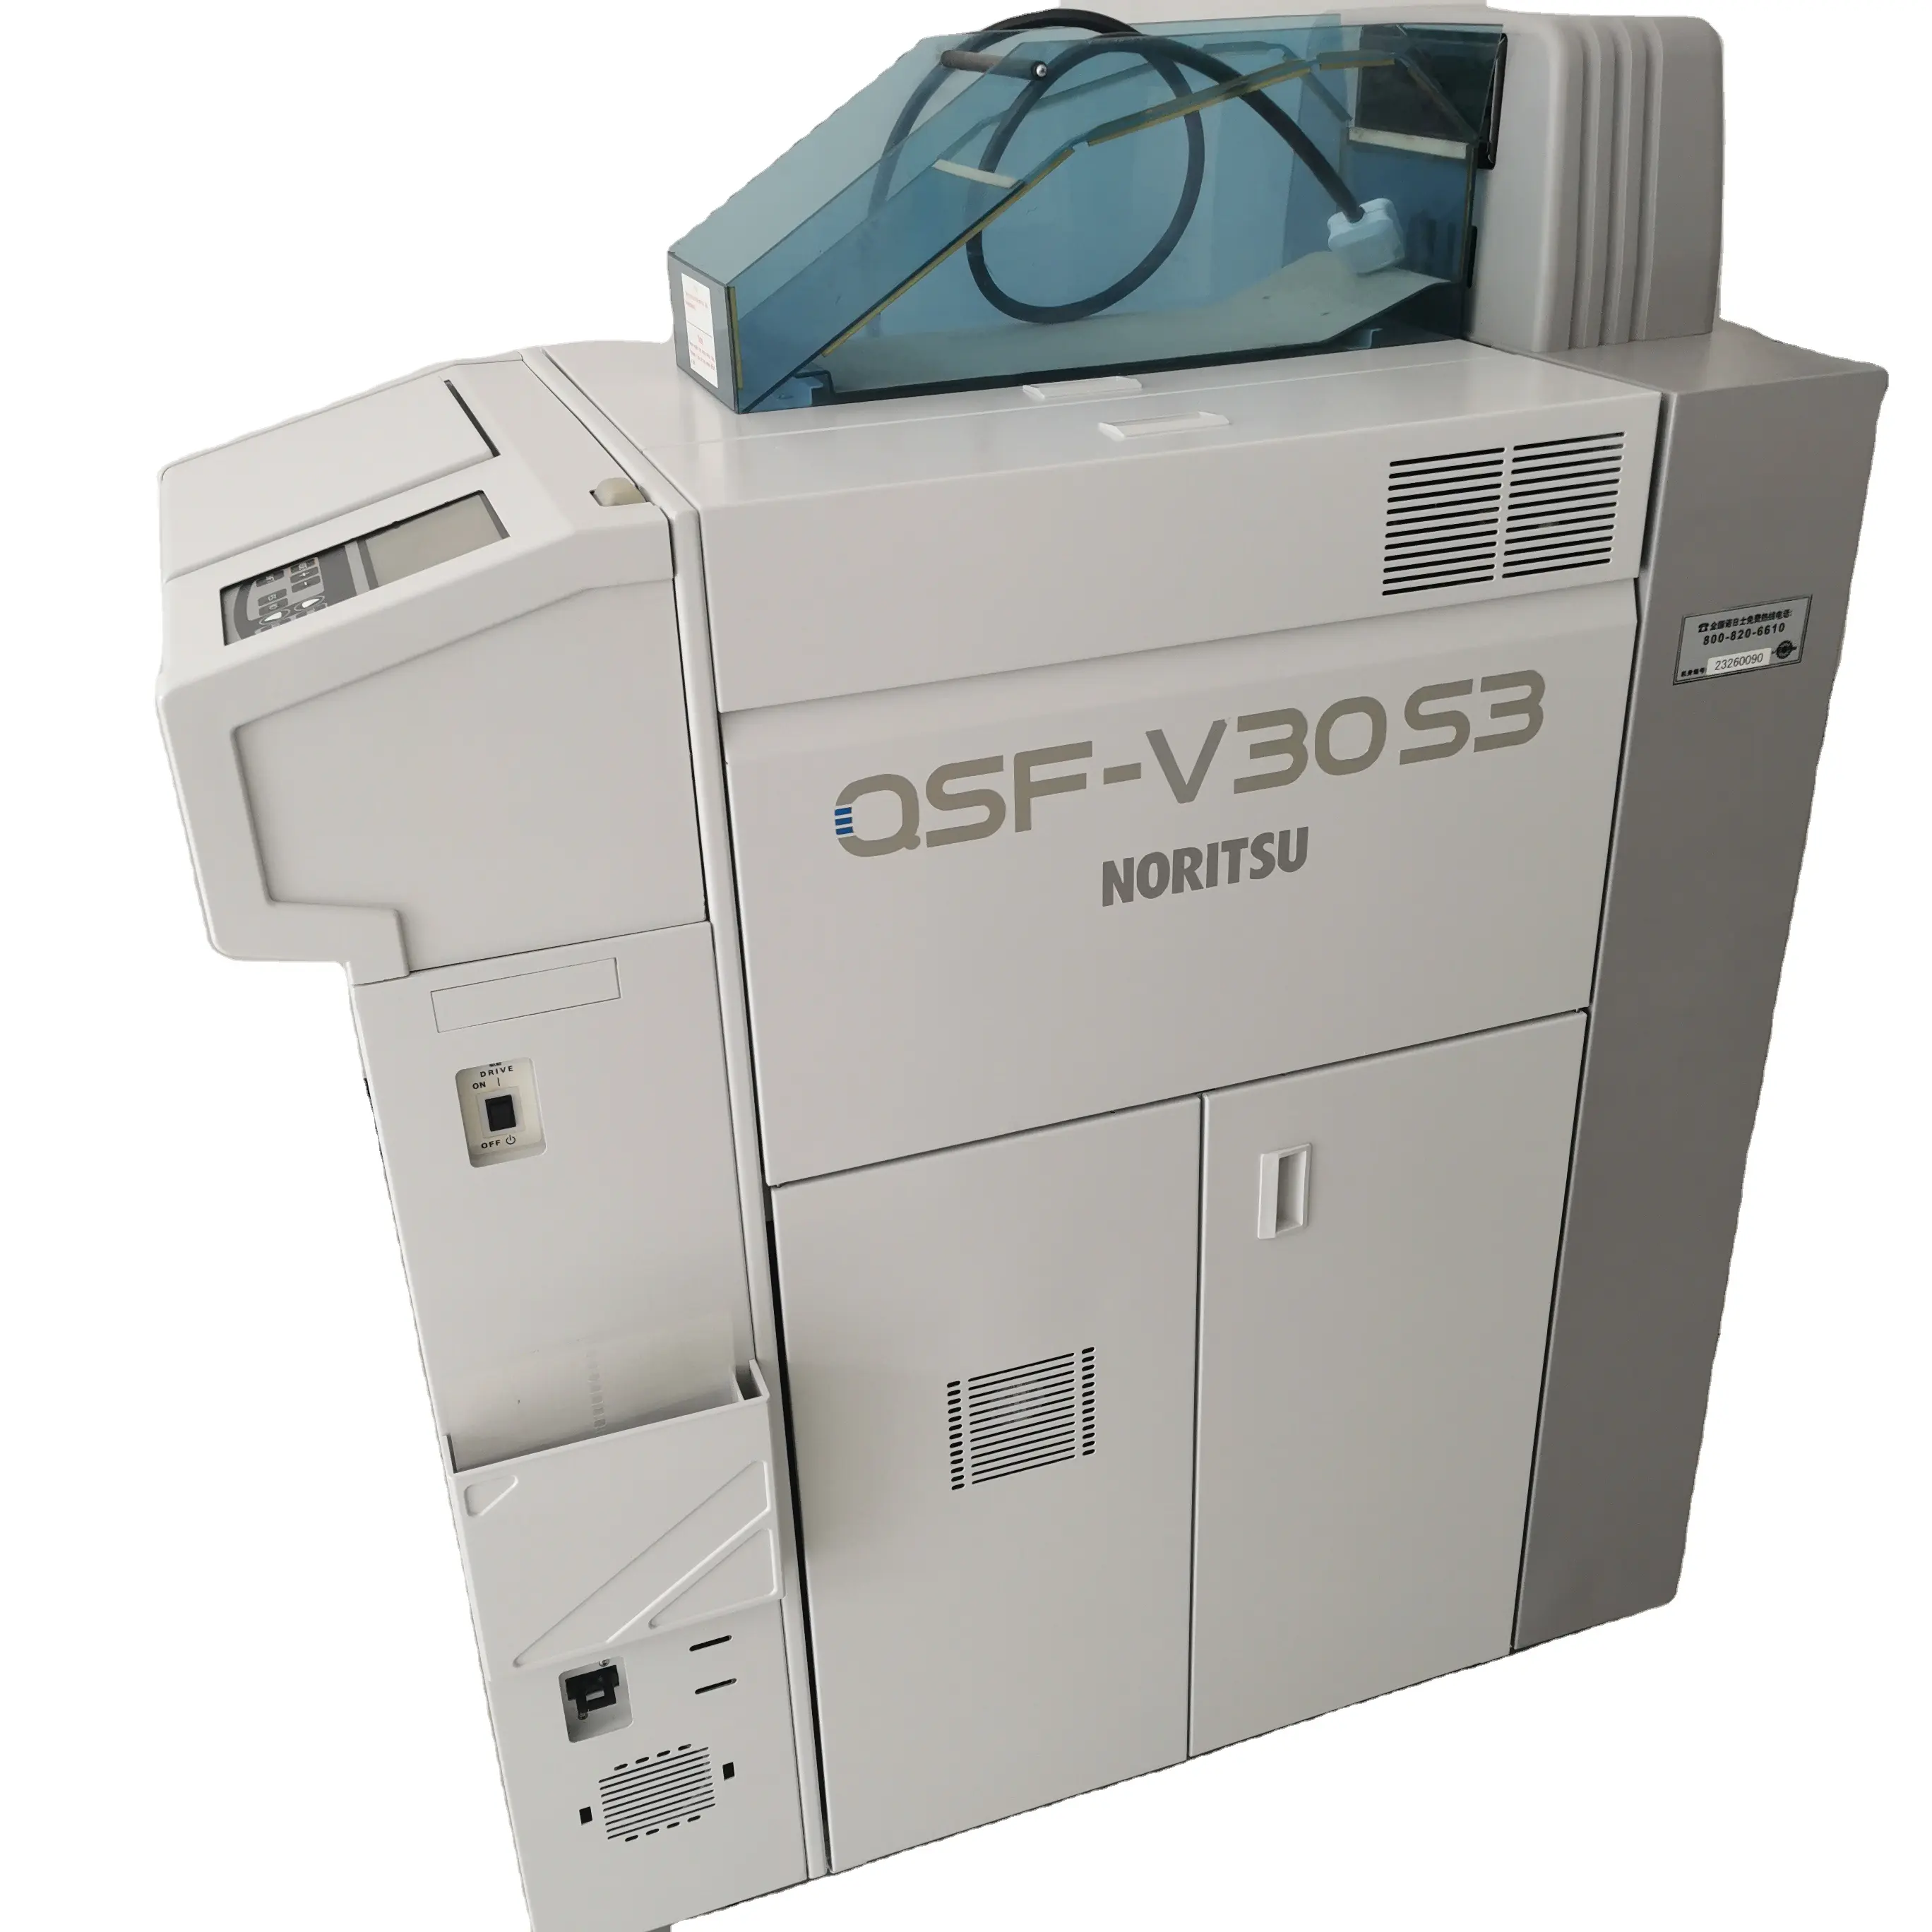 Gebruikt Noritsu Film Processor Minilab QSF-V30S3 Refurbished